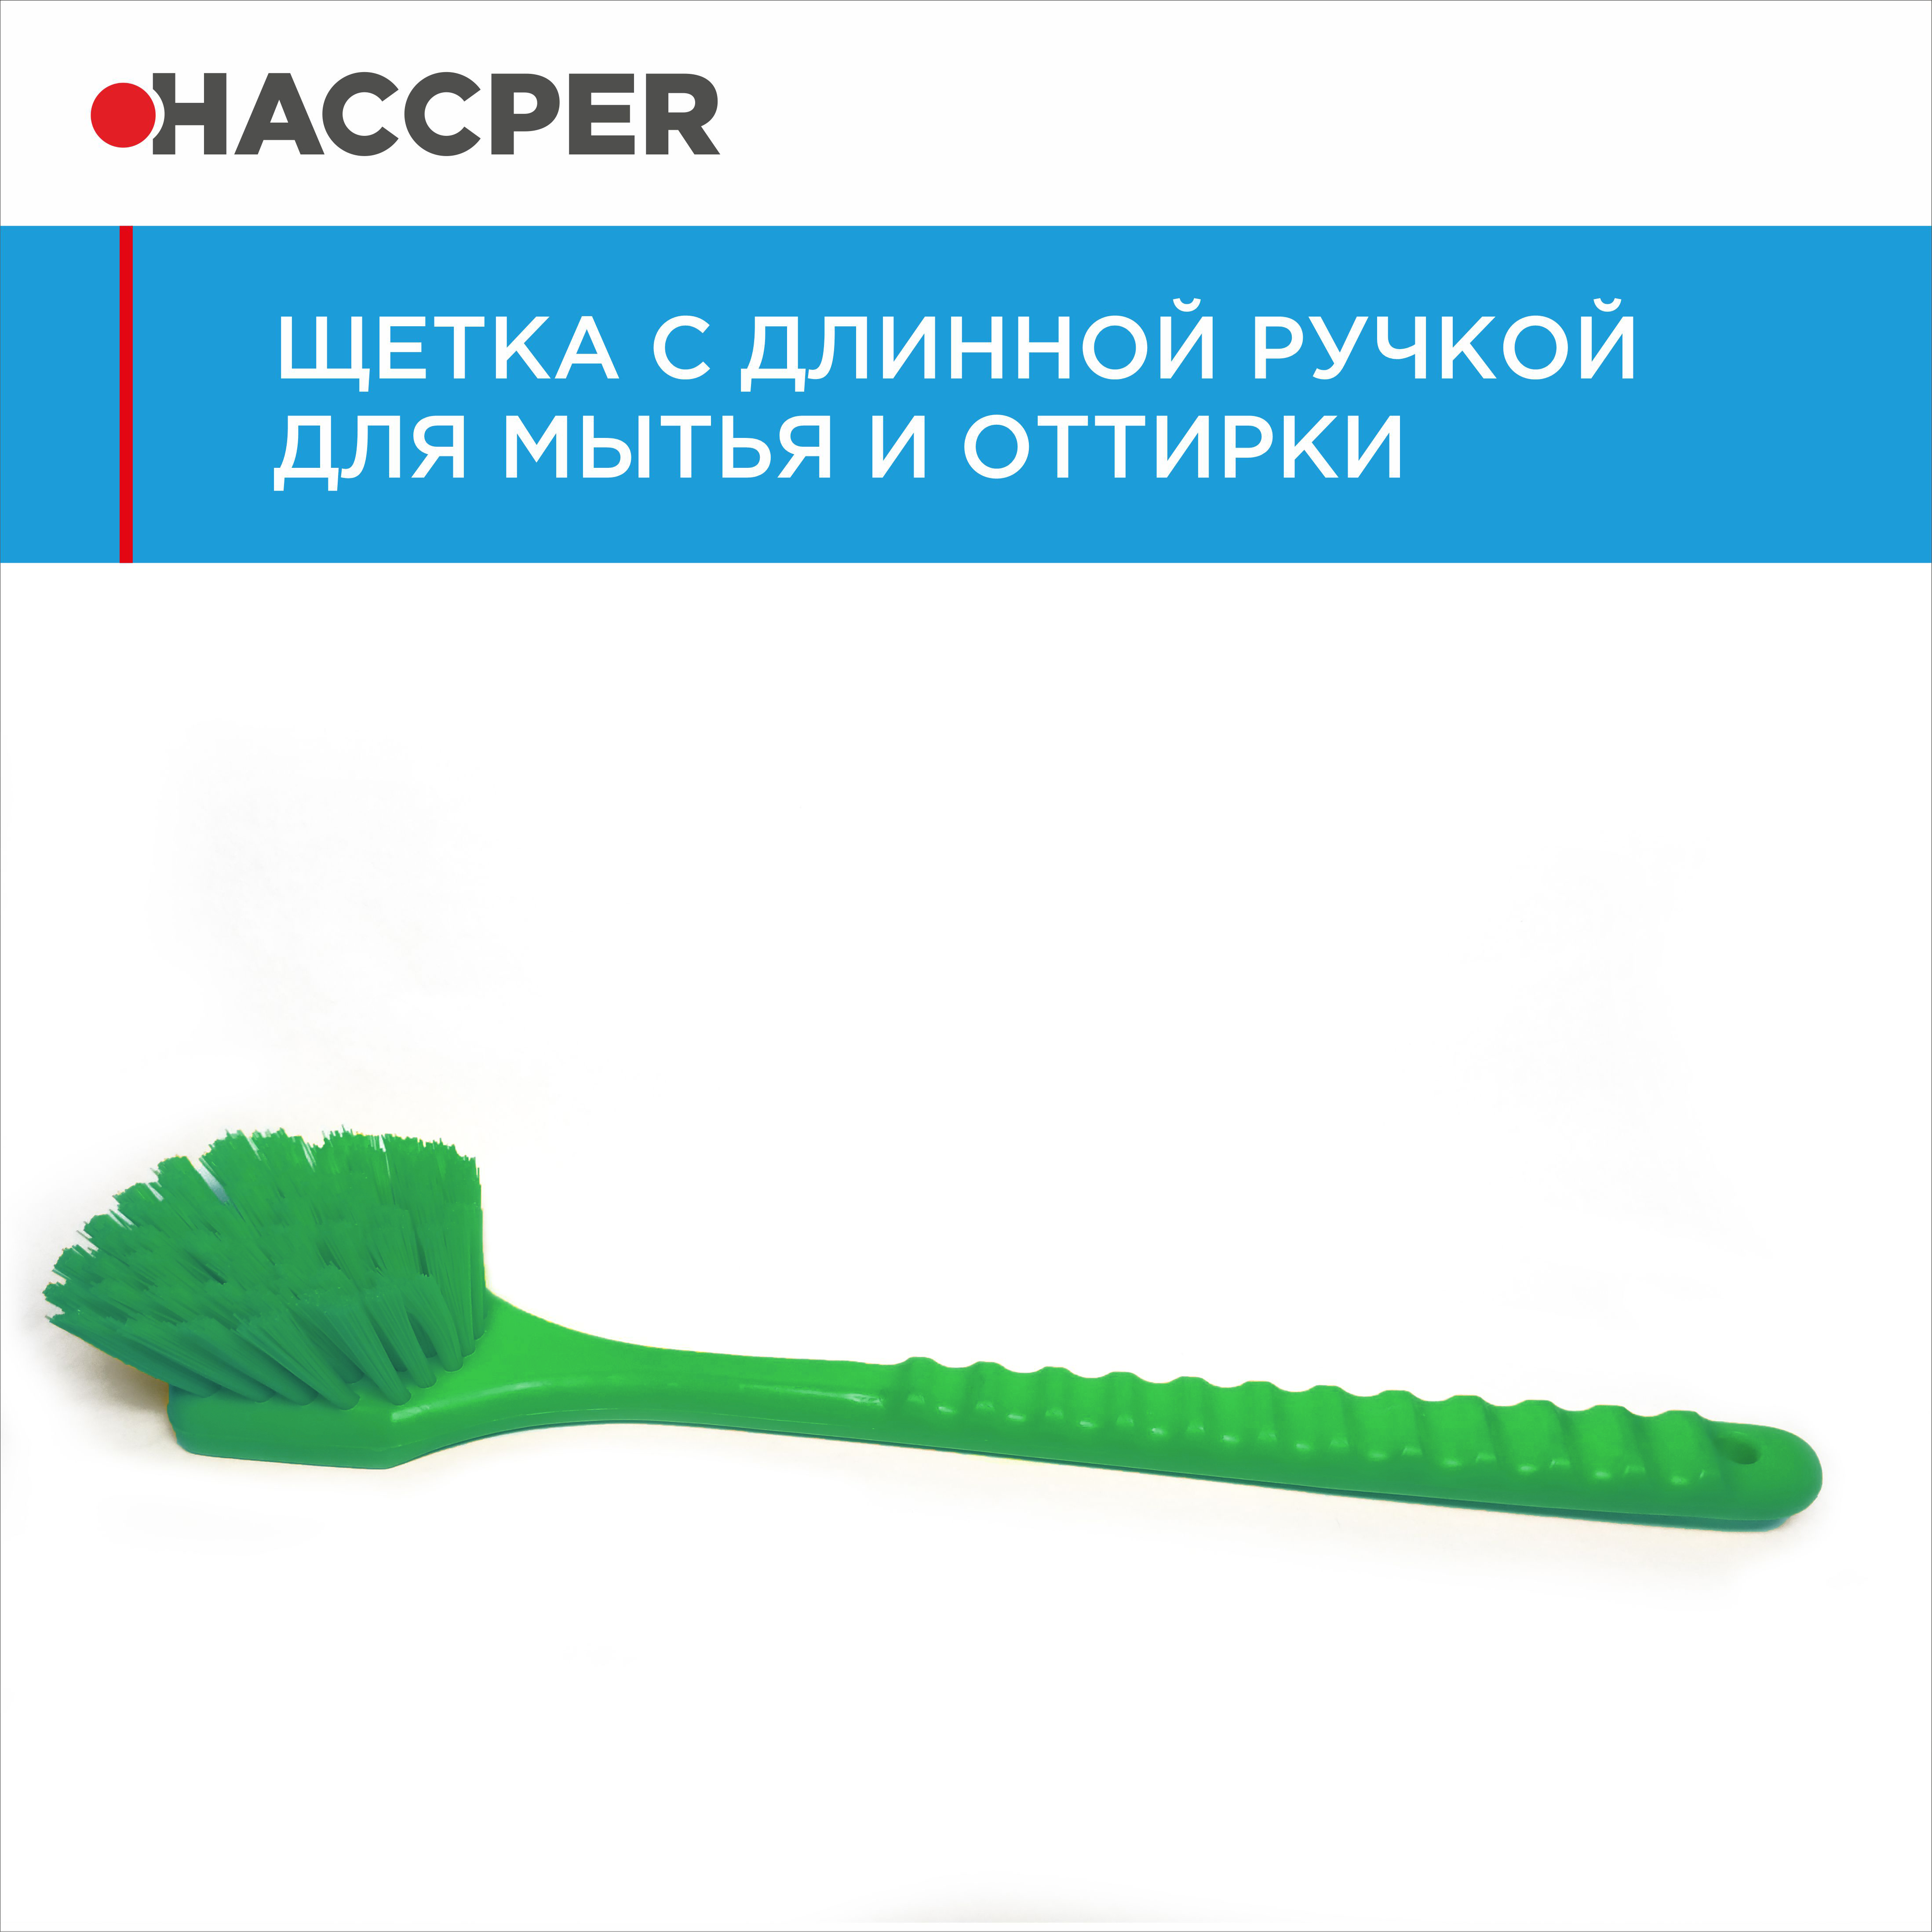 Щетка HACCPER с длинной ручкой, для мытья и оттирки, жесткая, 500 мм, зеленый